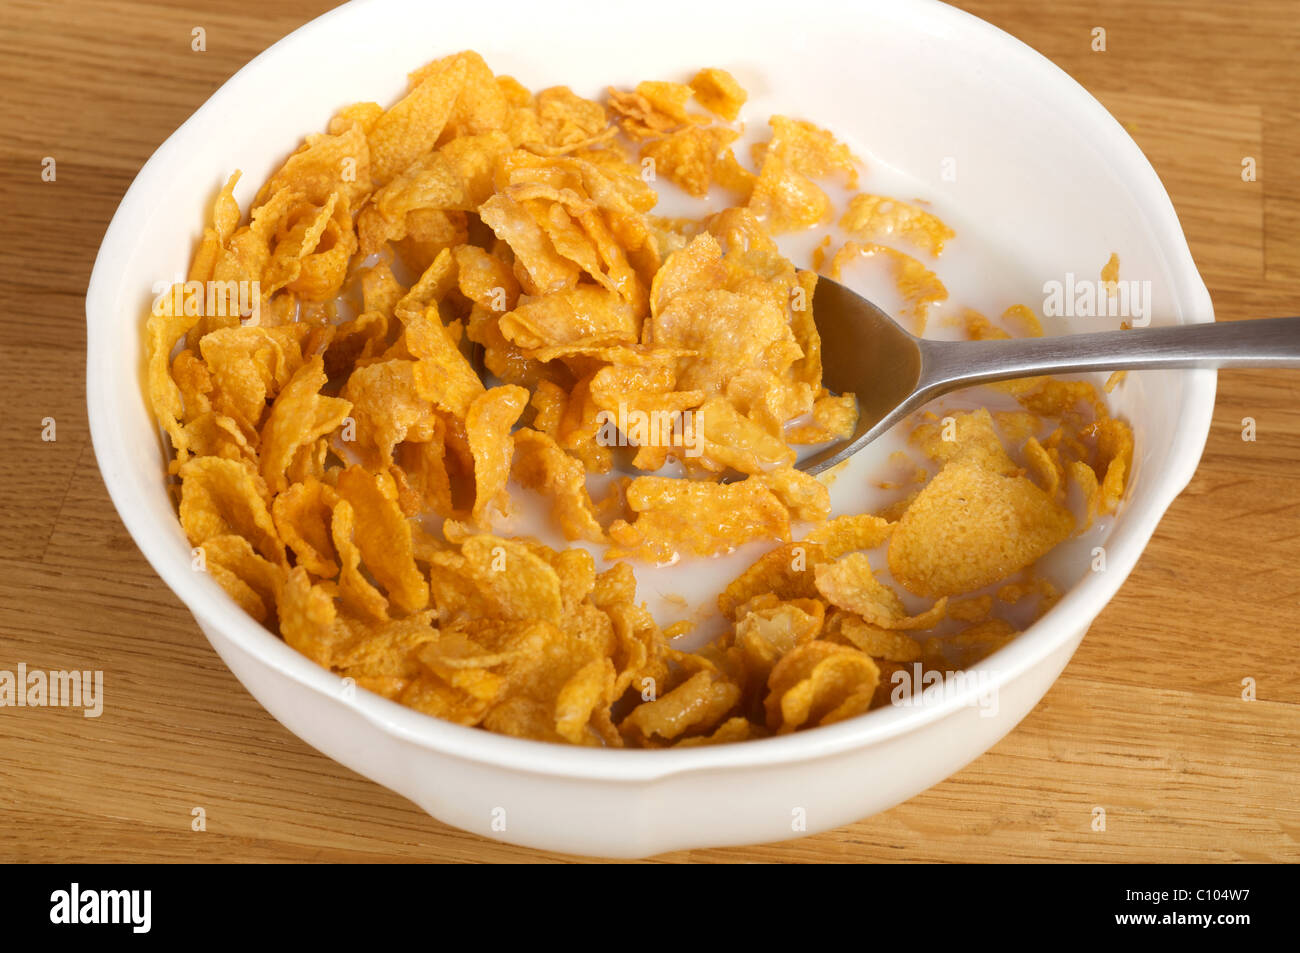 Schüssel mit Kellogg's Cornflakes und Milch Stockfotografie - Alamy